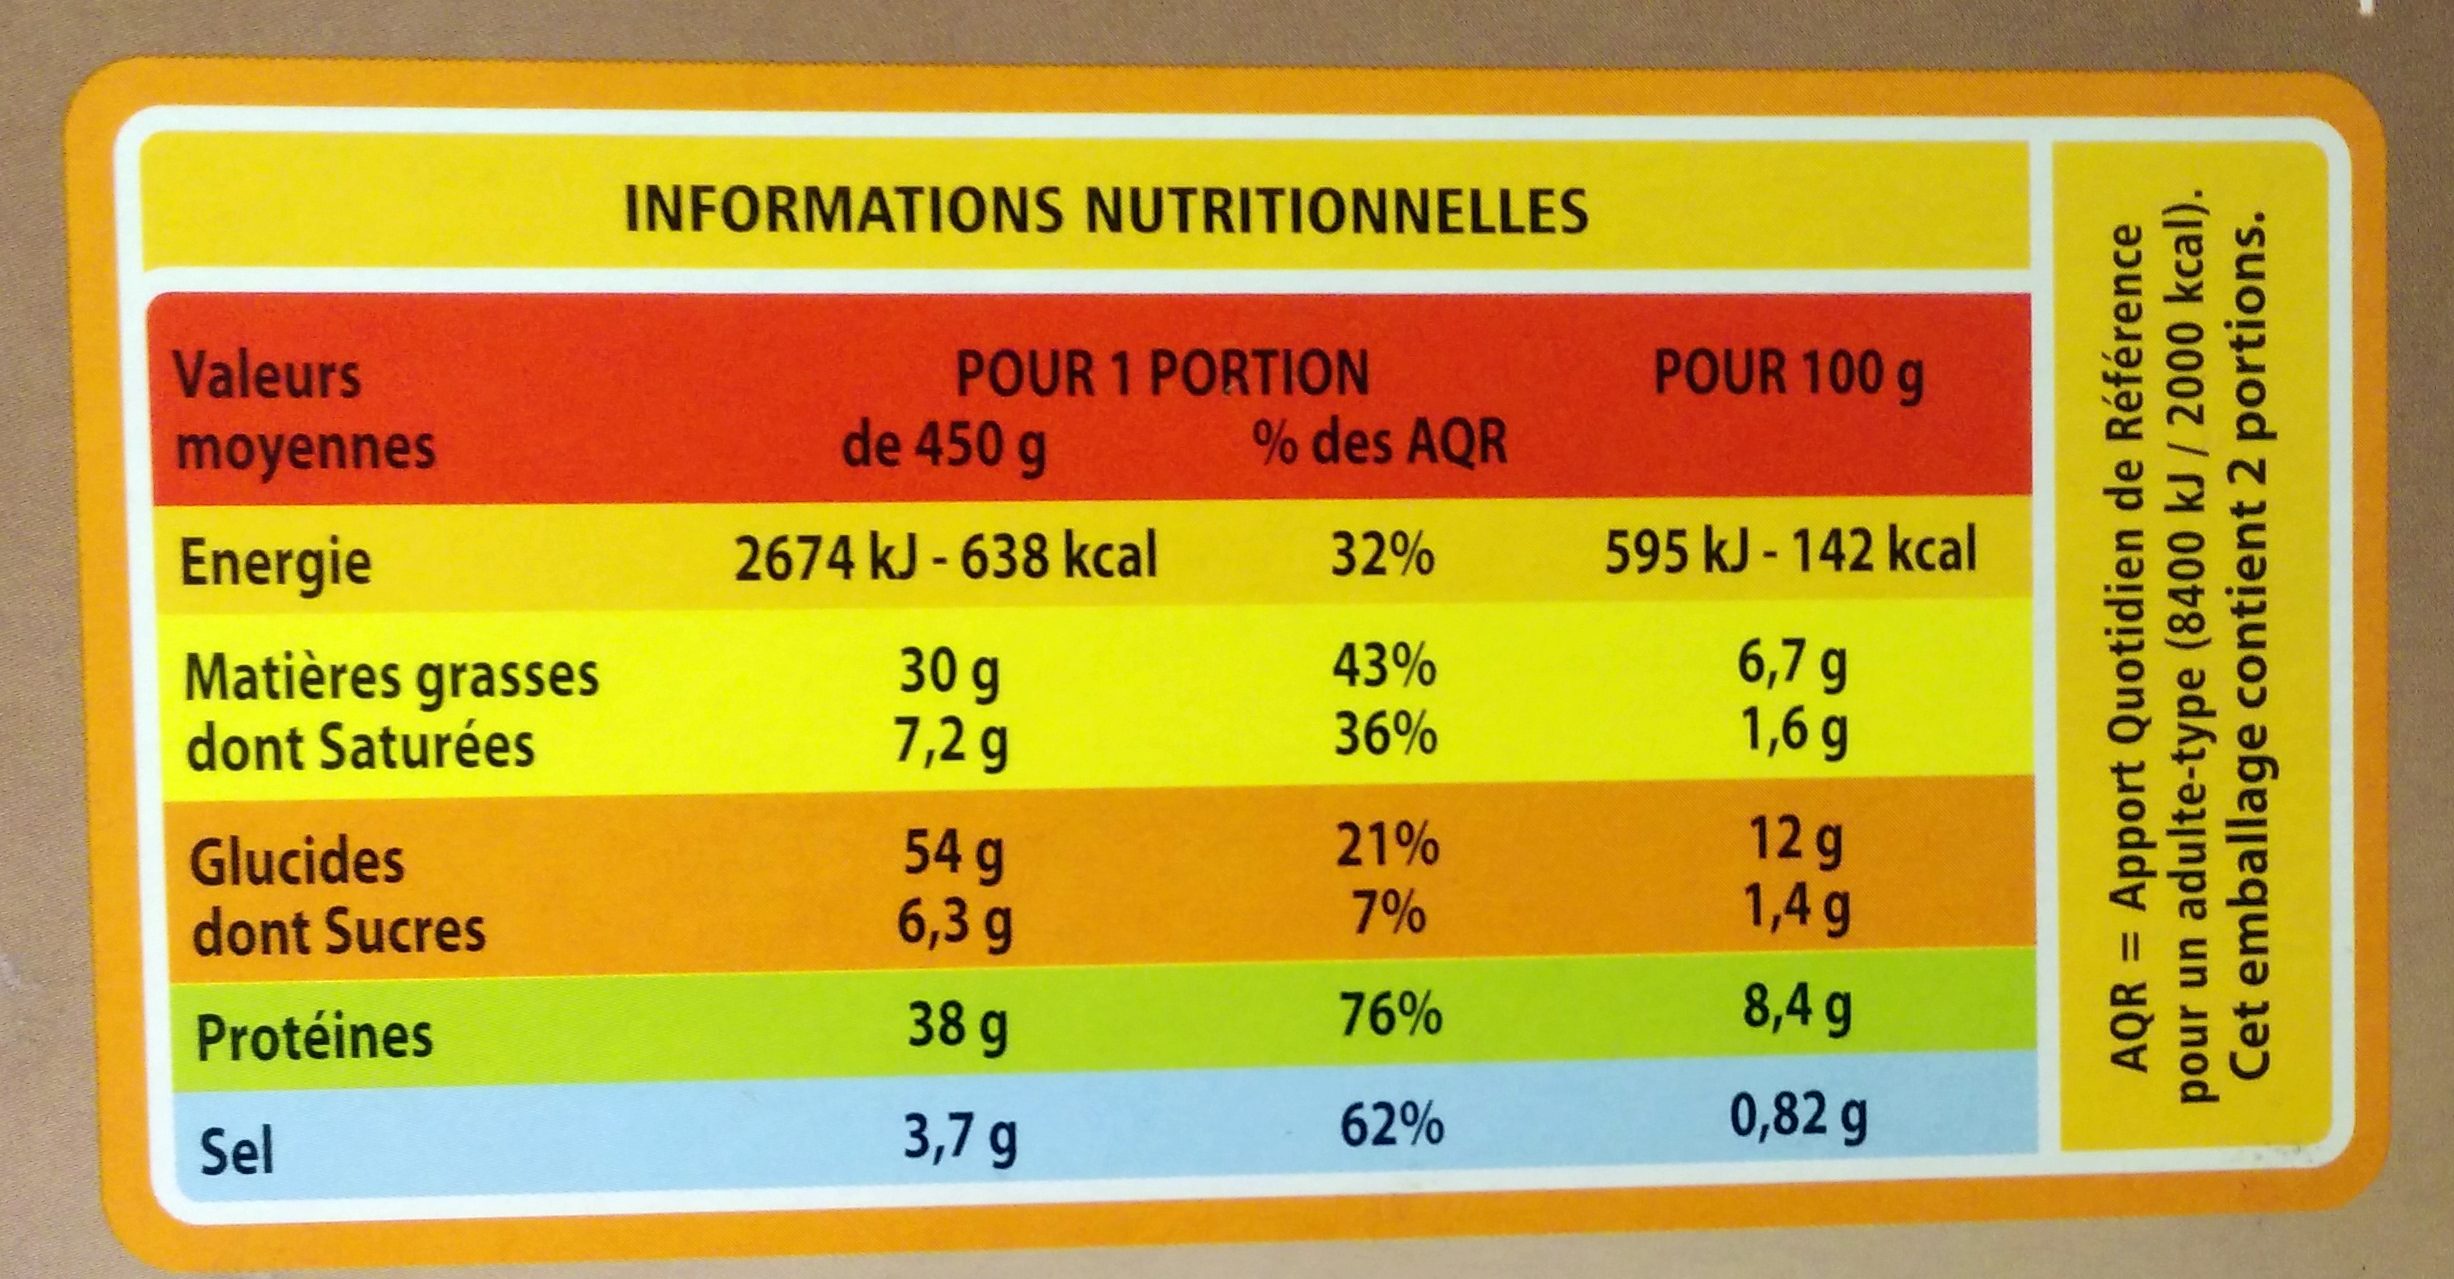 Couscous poulet merguez - Información nutricional - fr